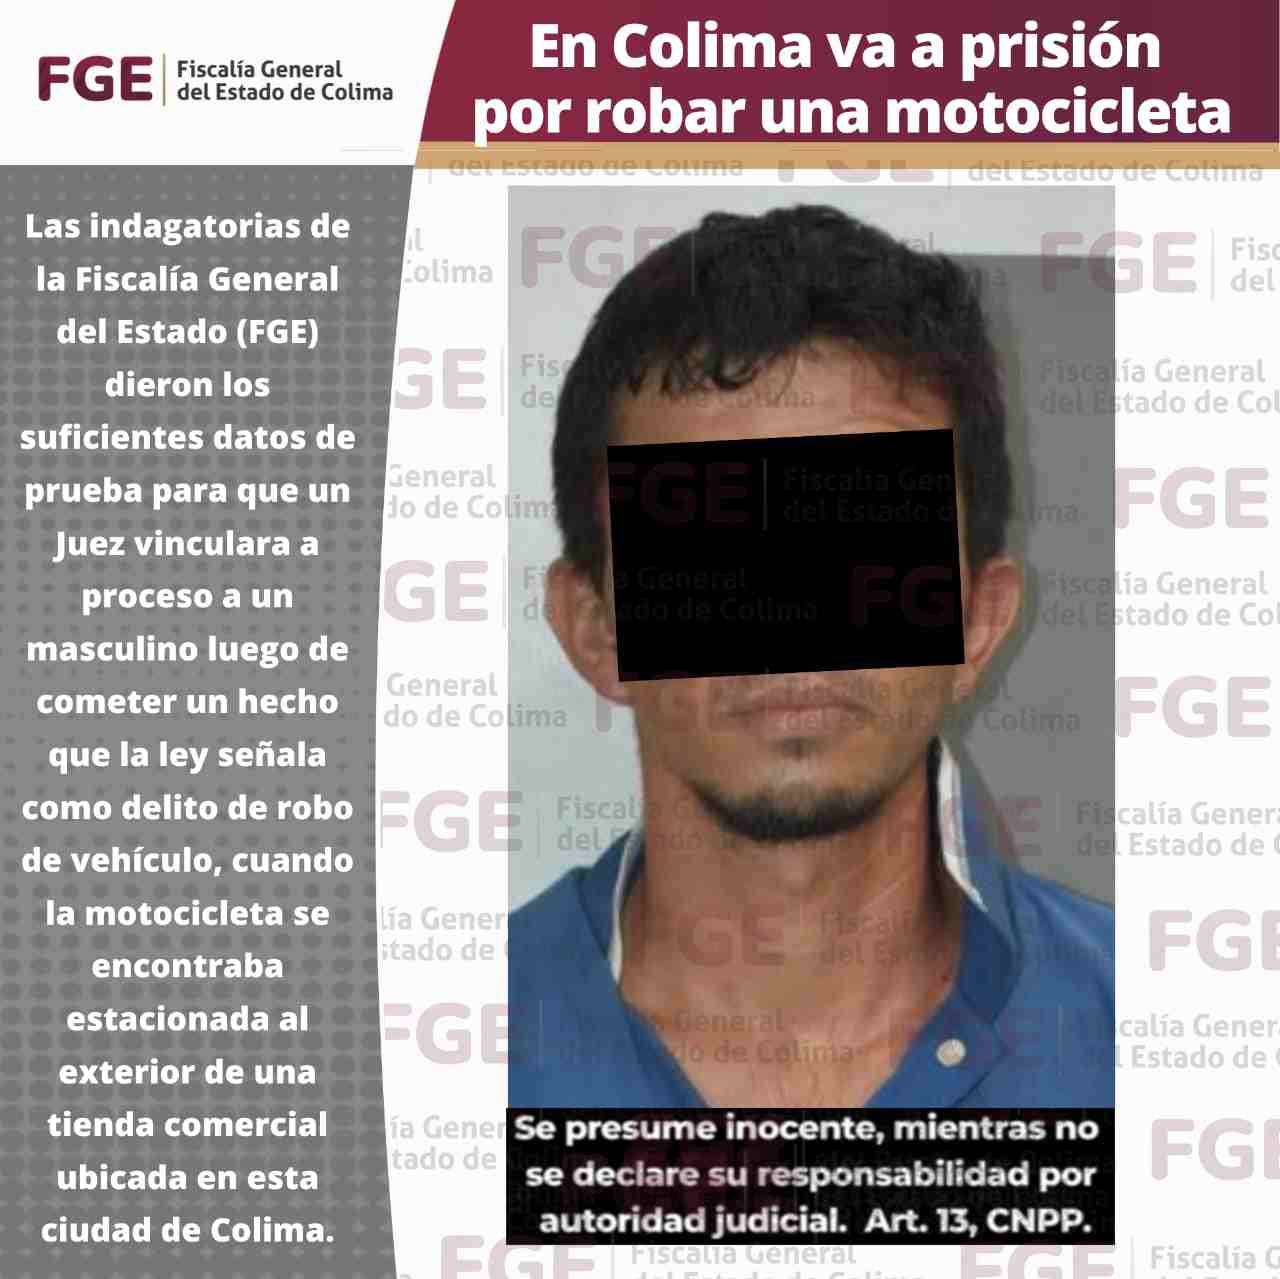 En Colima; Va a prisión por robar una motocicleta